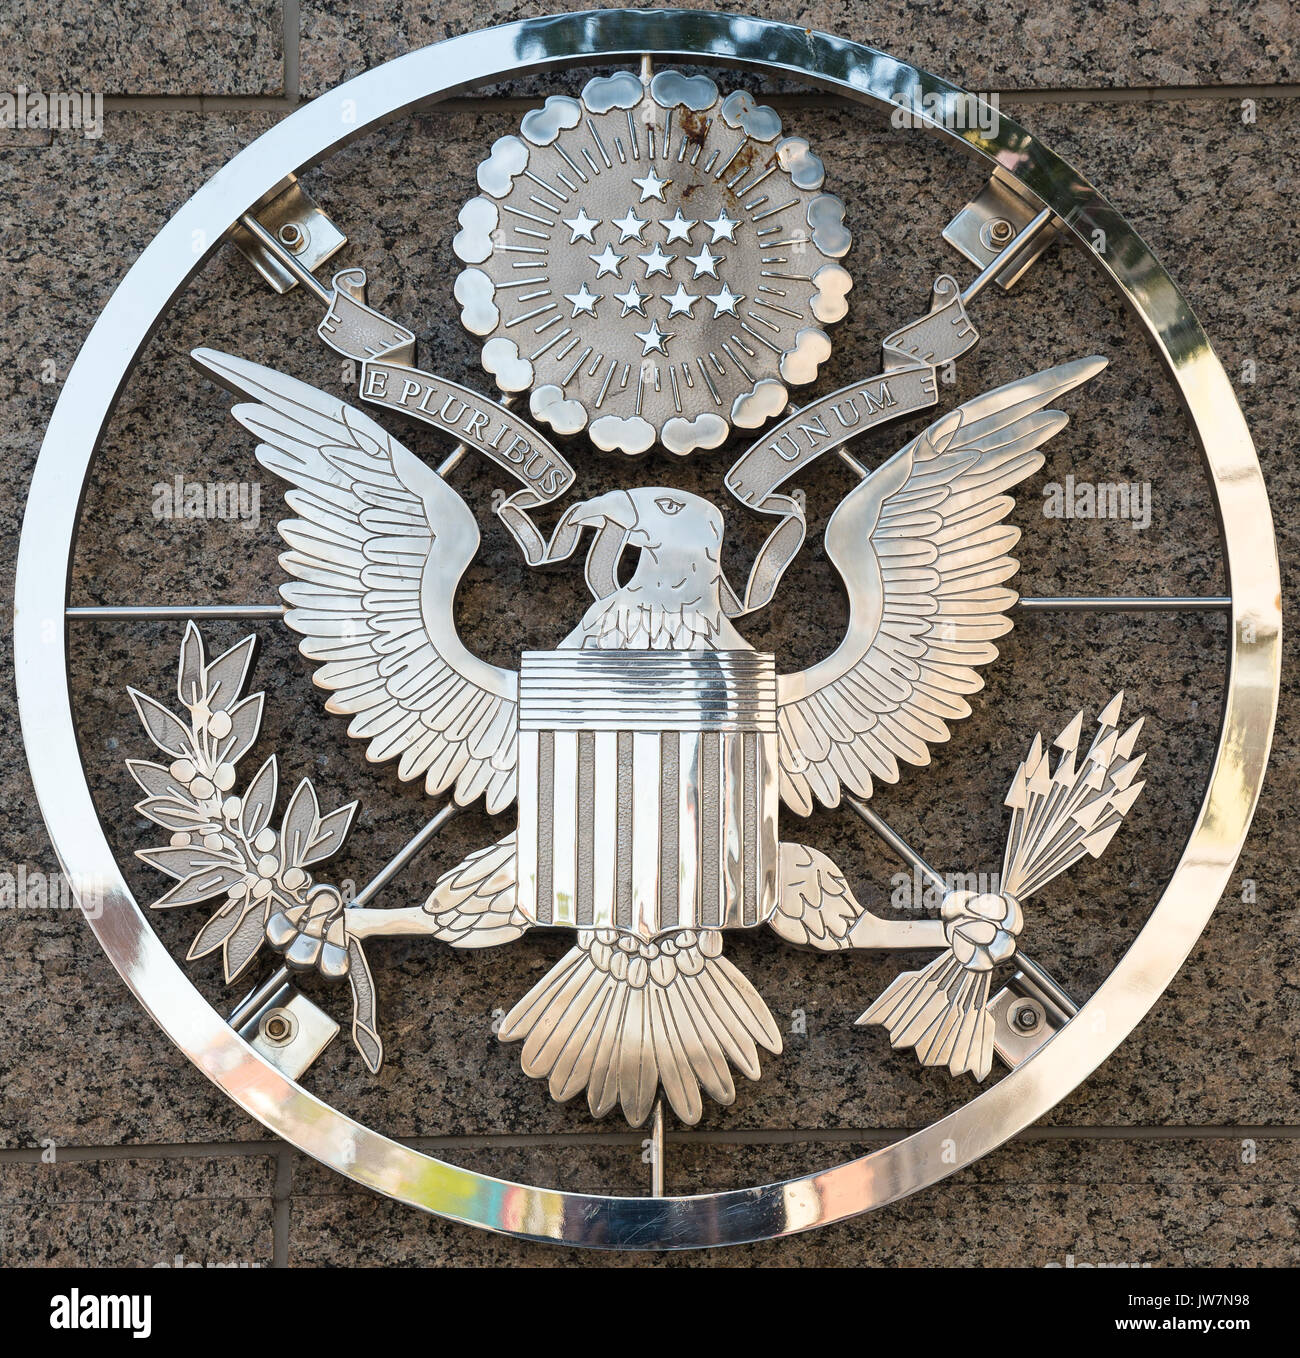 The US Embassy emblem in Ottawa Ontario Canada E Pluribus Unum Stock Photo